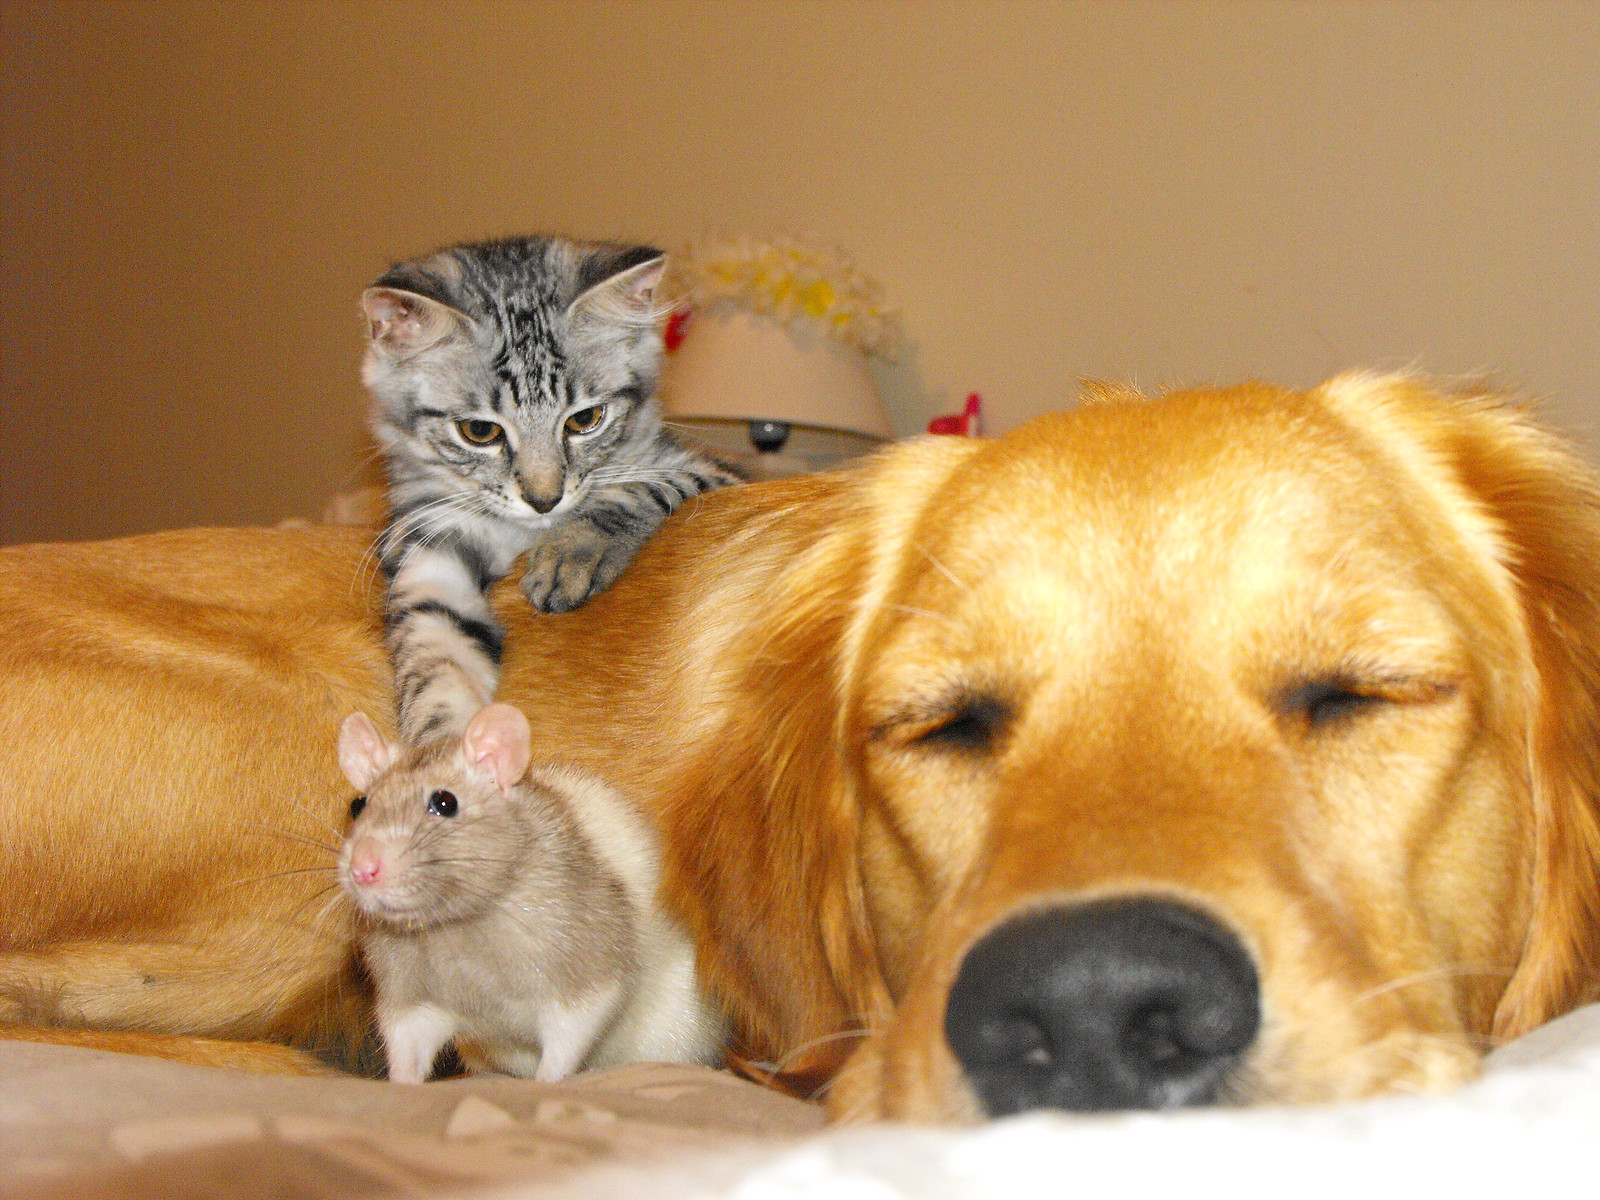 Ютуб домашнее животное. Кошки и собаки. Собака кошка хомяк. Собака и кошка вместе. Домашние любимцы.